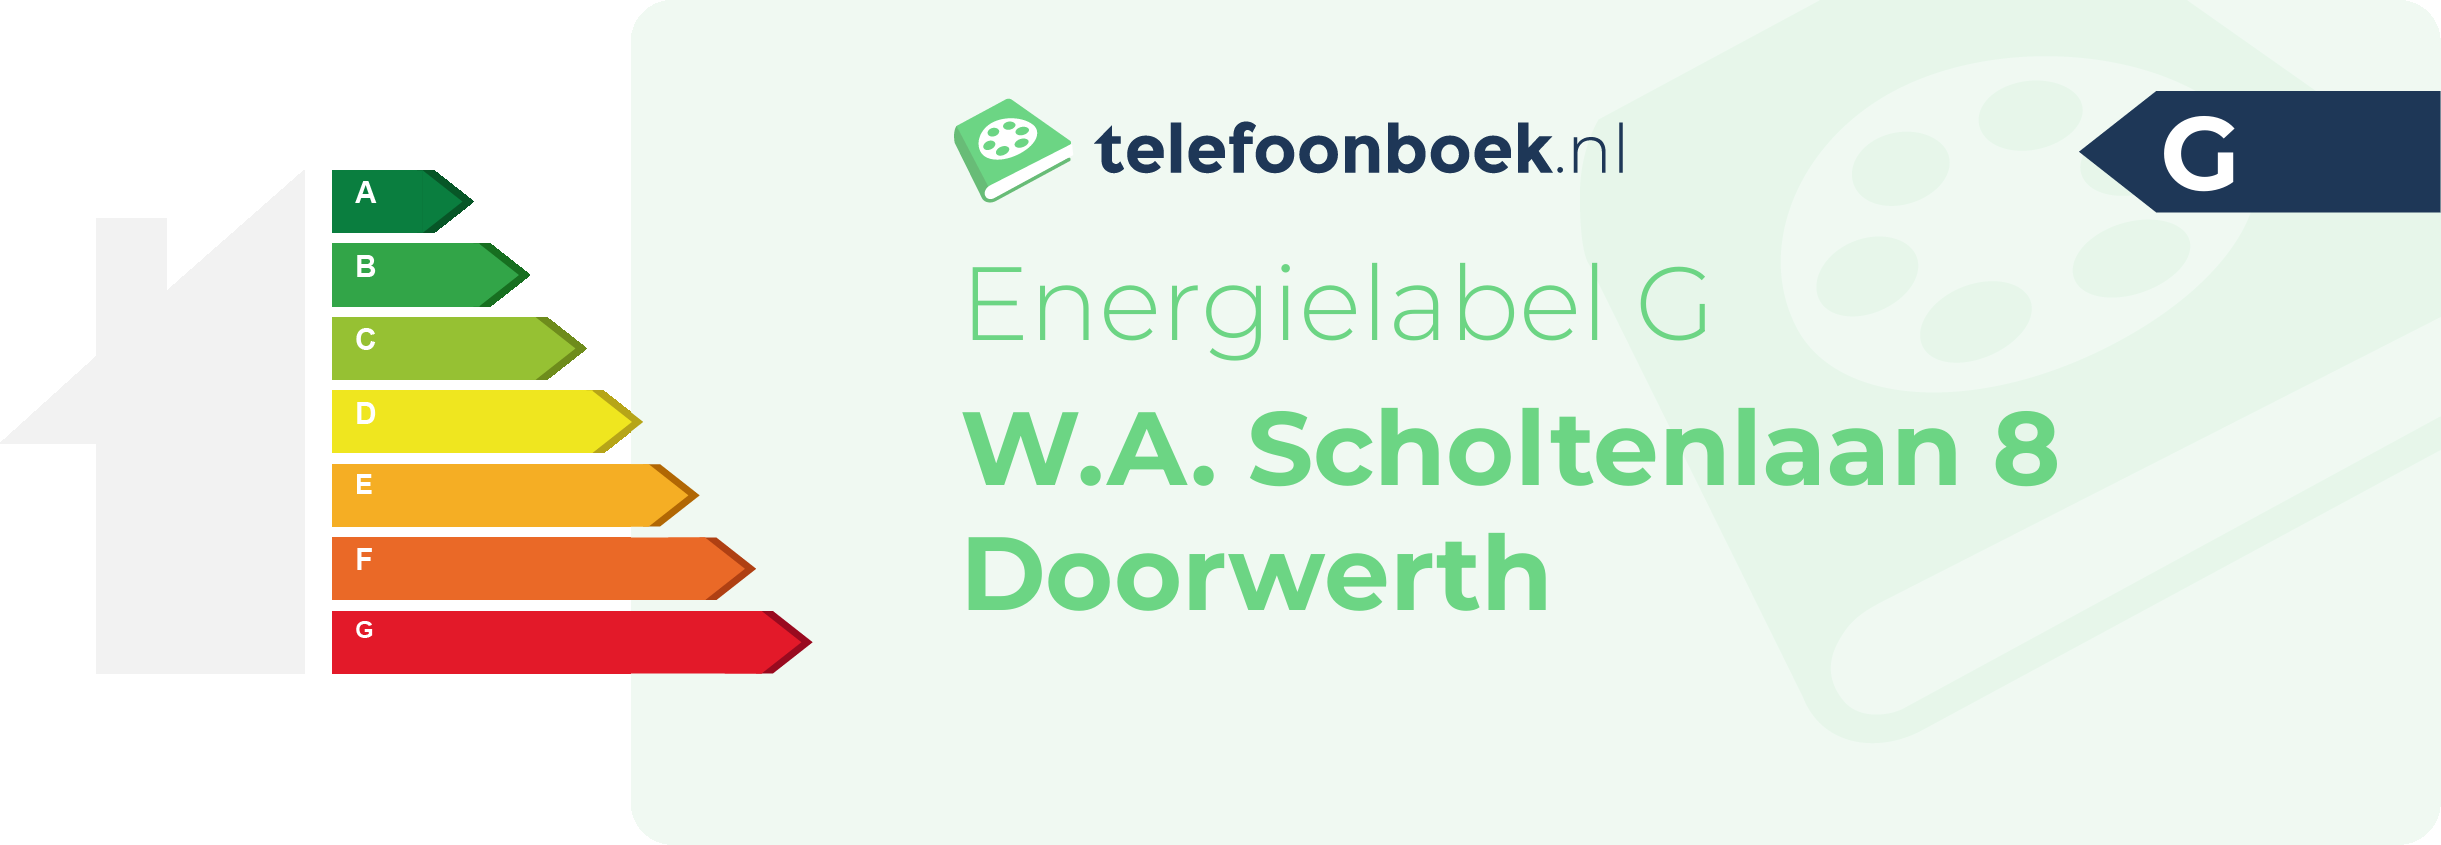 Energielabel W.A. Scholtenlaan 8 Doorwerth